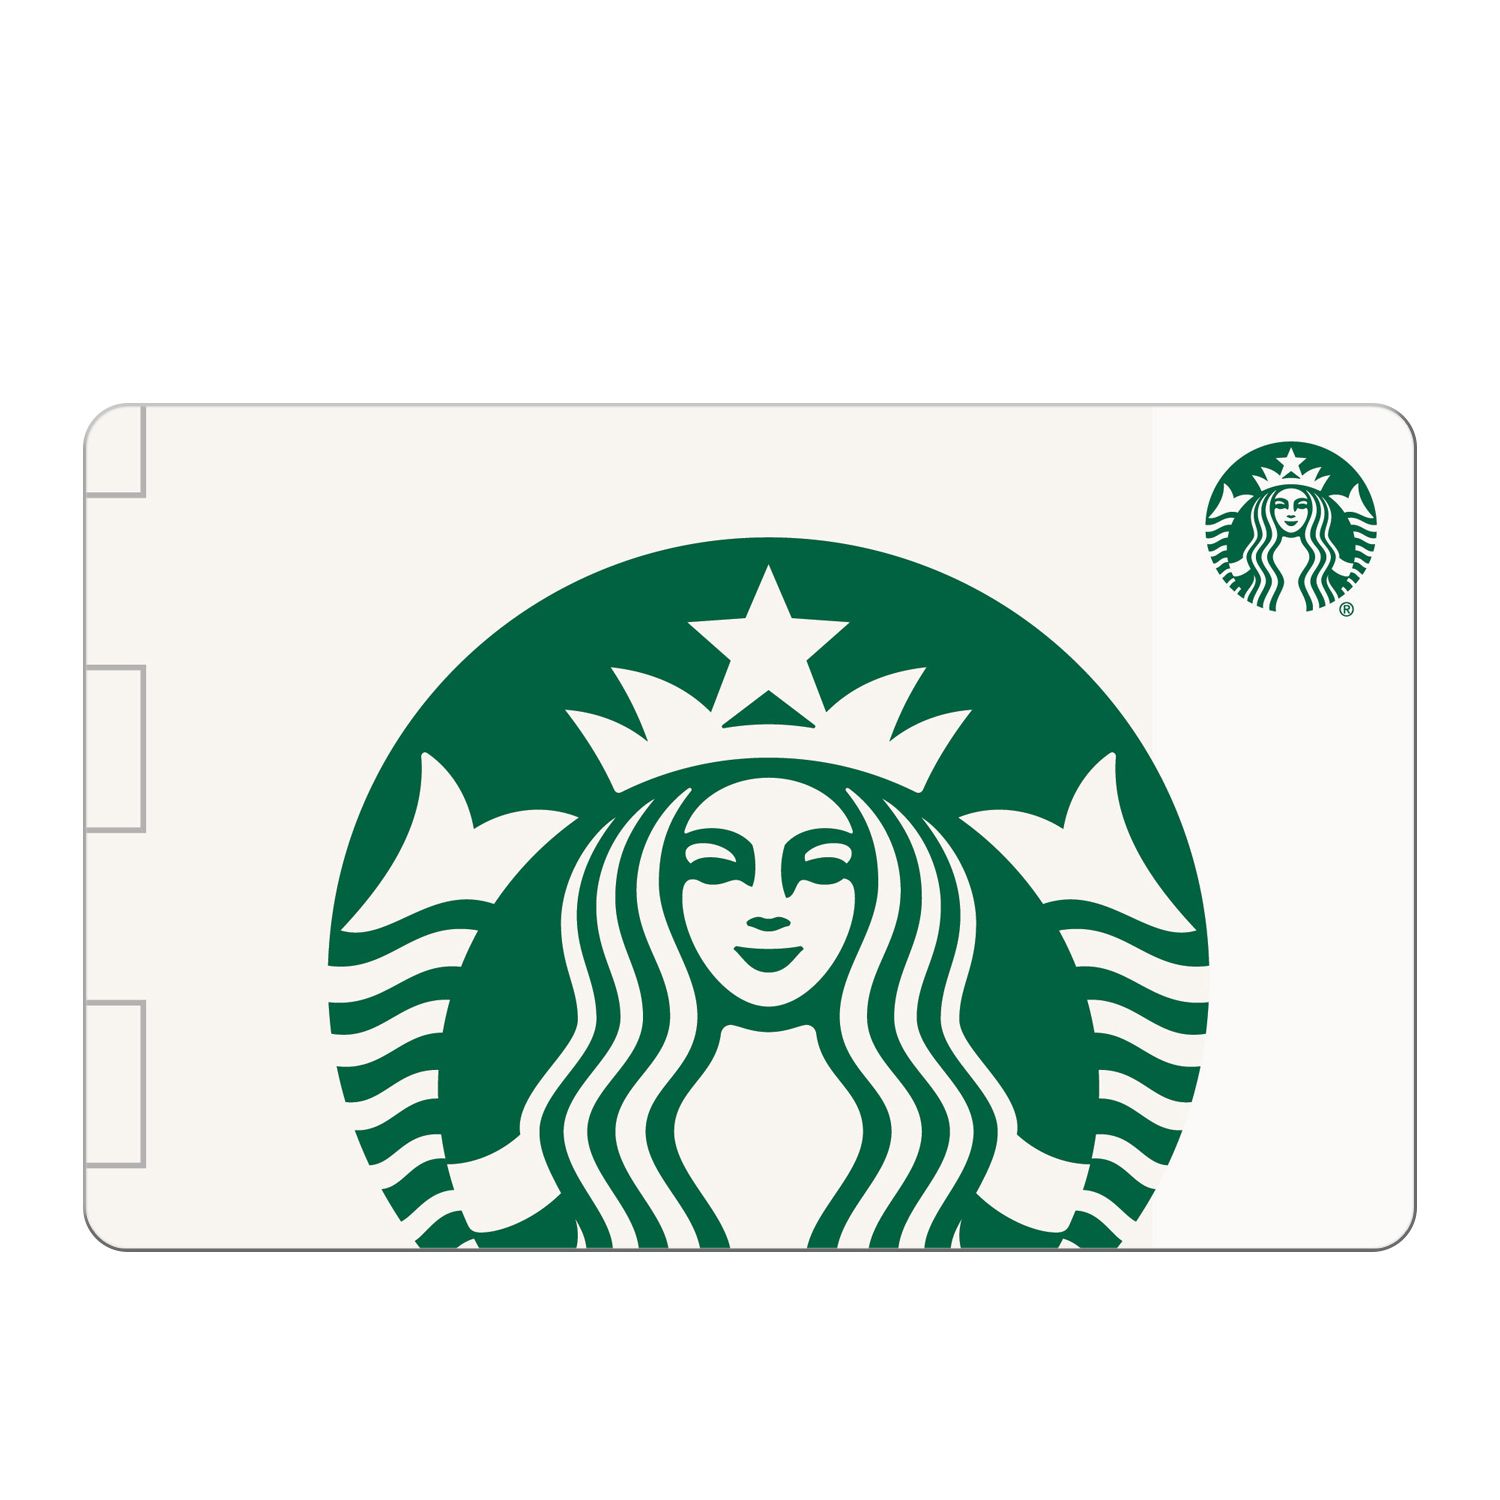 $50 Starbucks Gift Card